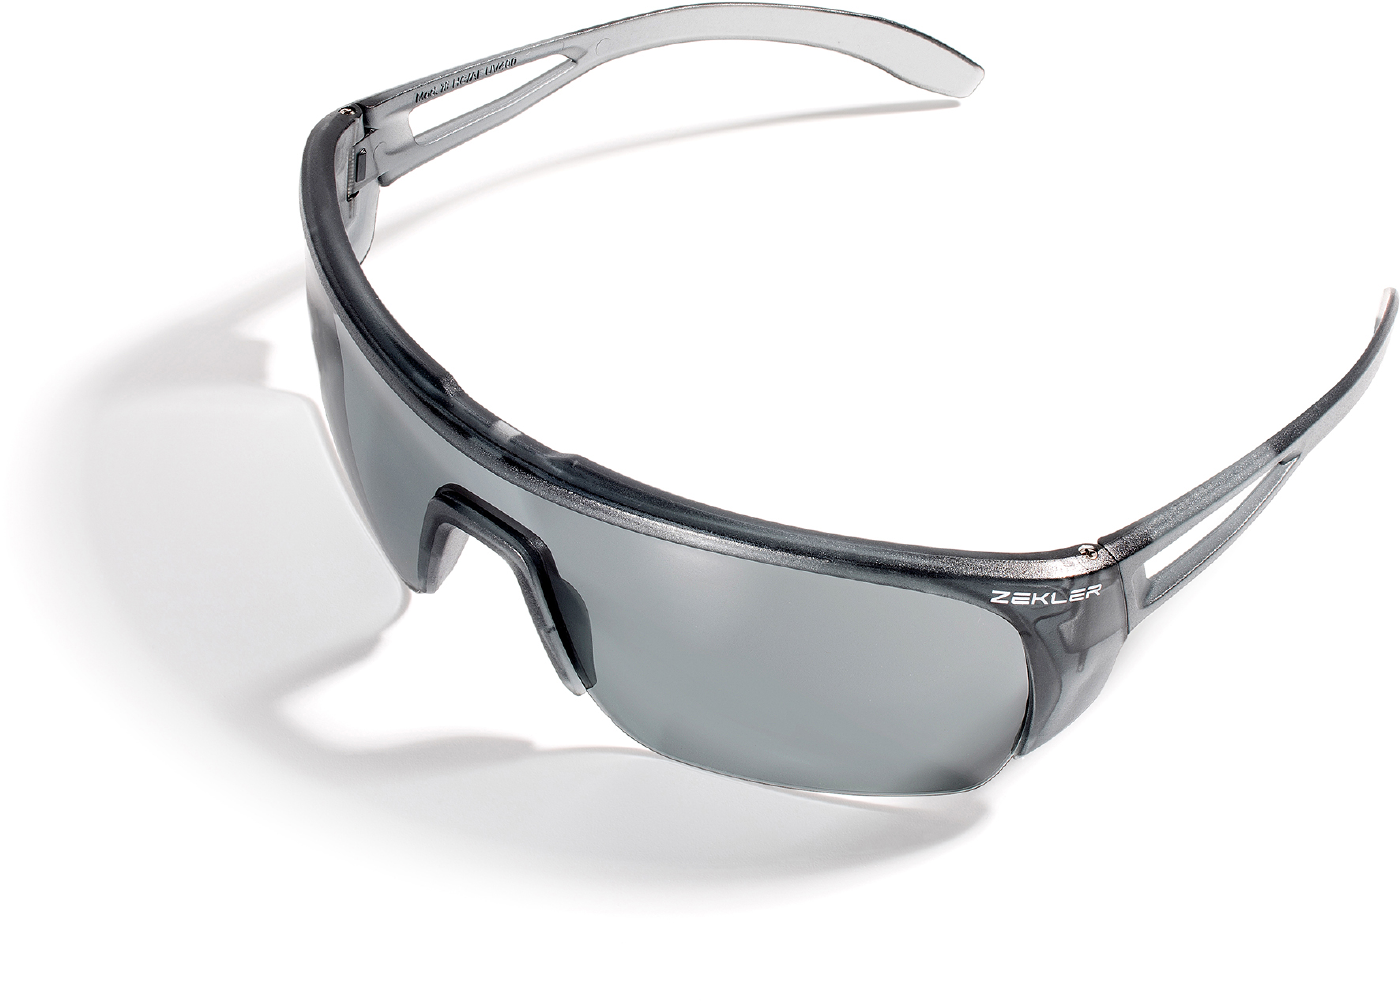 Vernebrille zekler 76 grå/grå